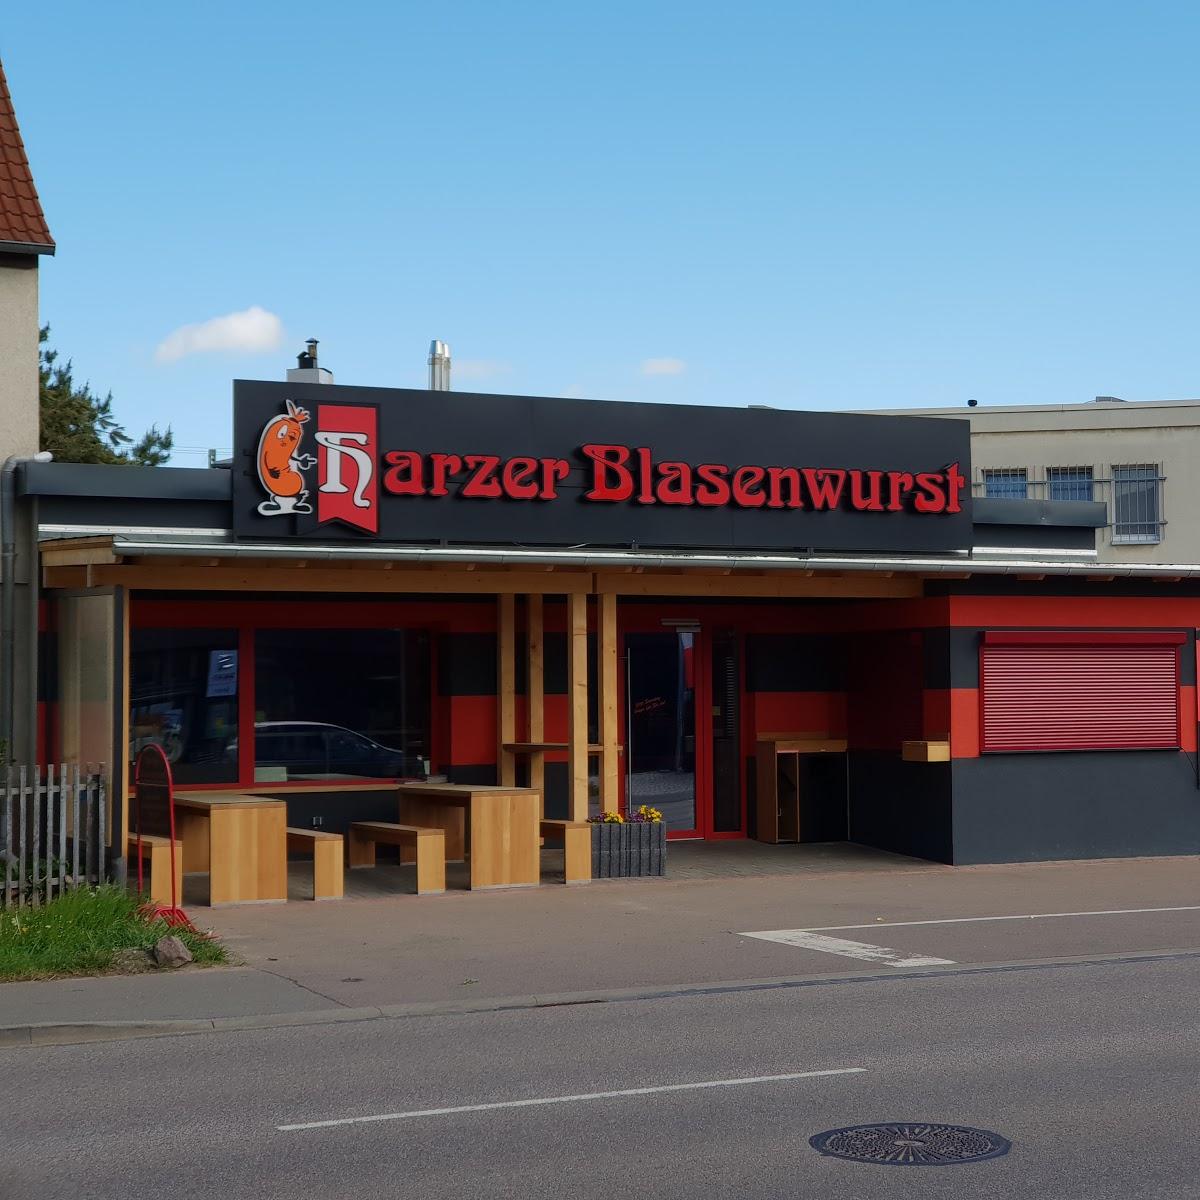 Restaurant "Harzer Blasenwurst" in Halle (Saale)